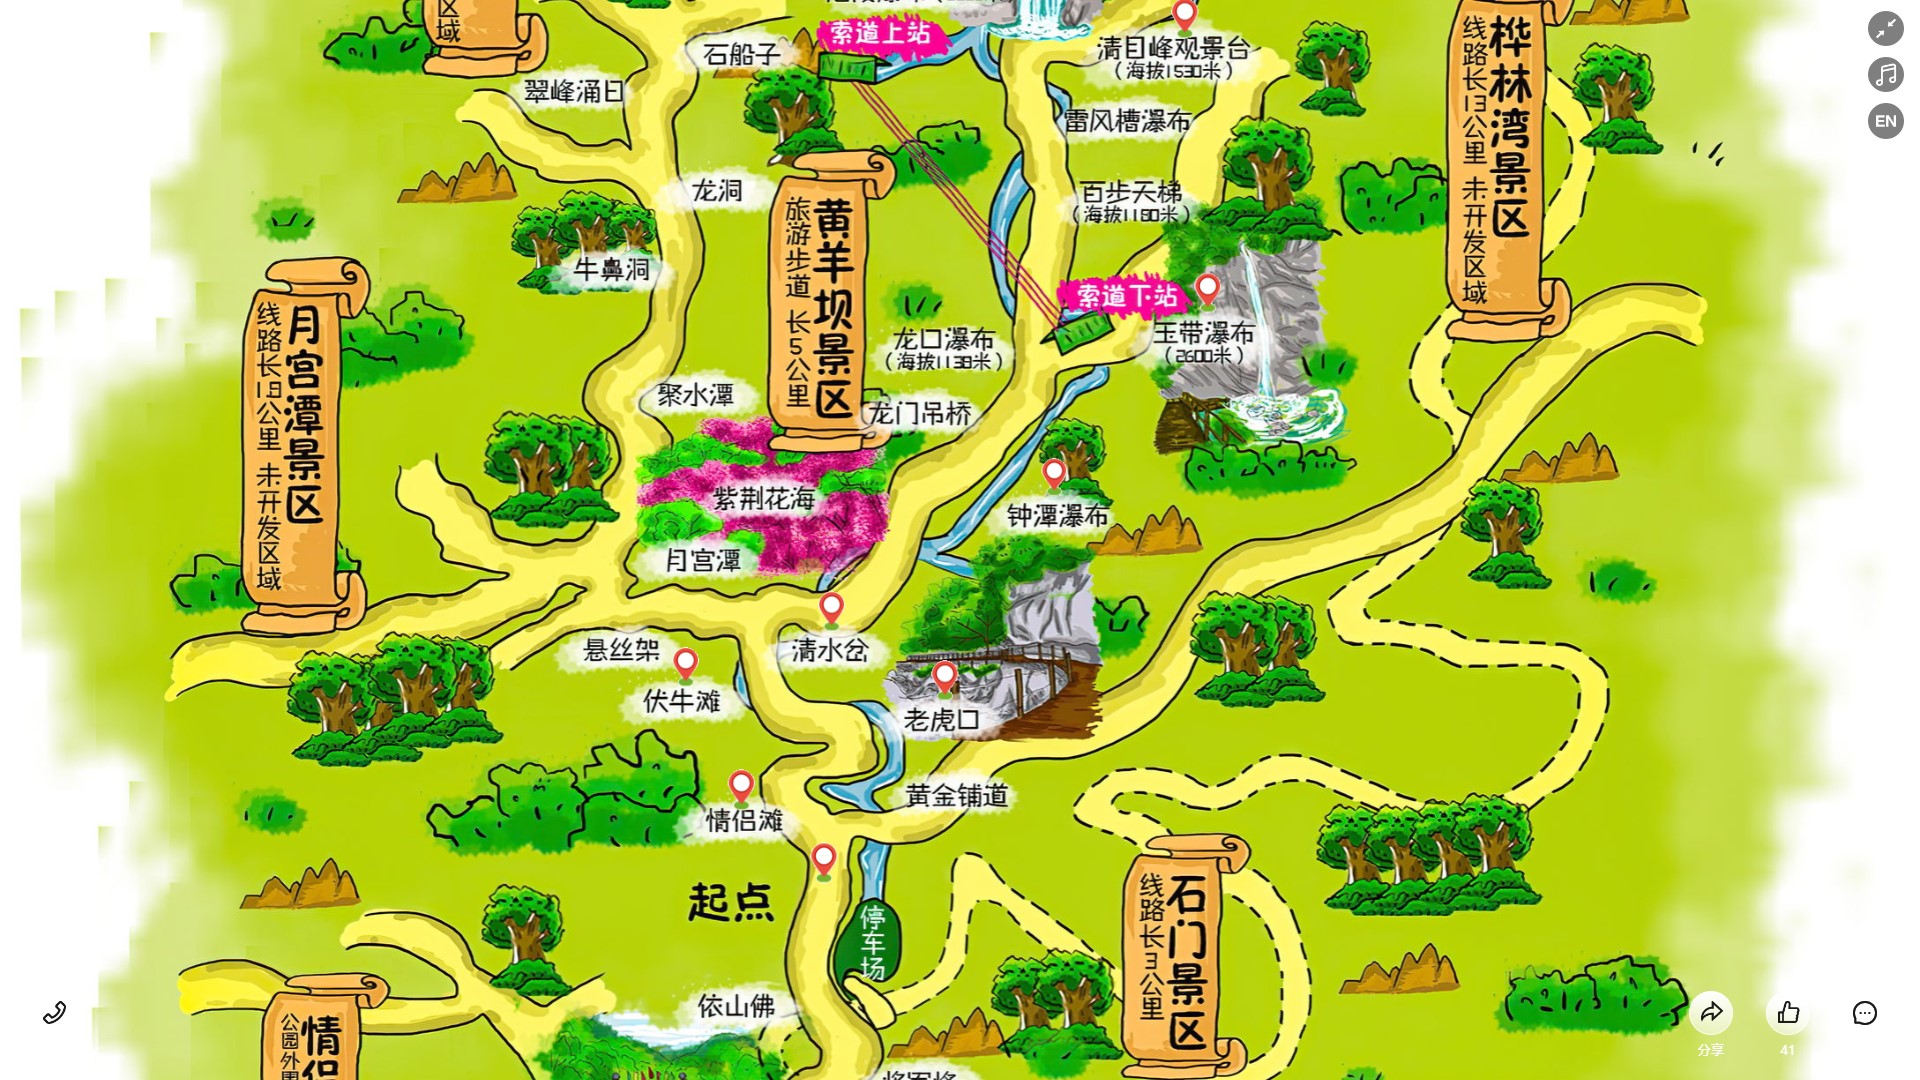 木里景区导览系统